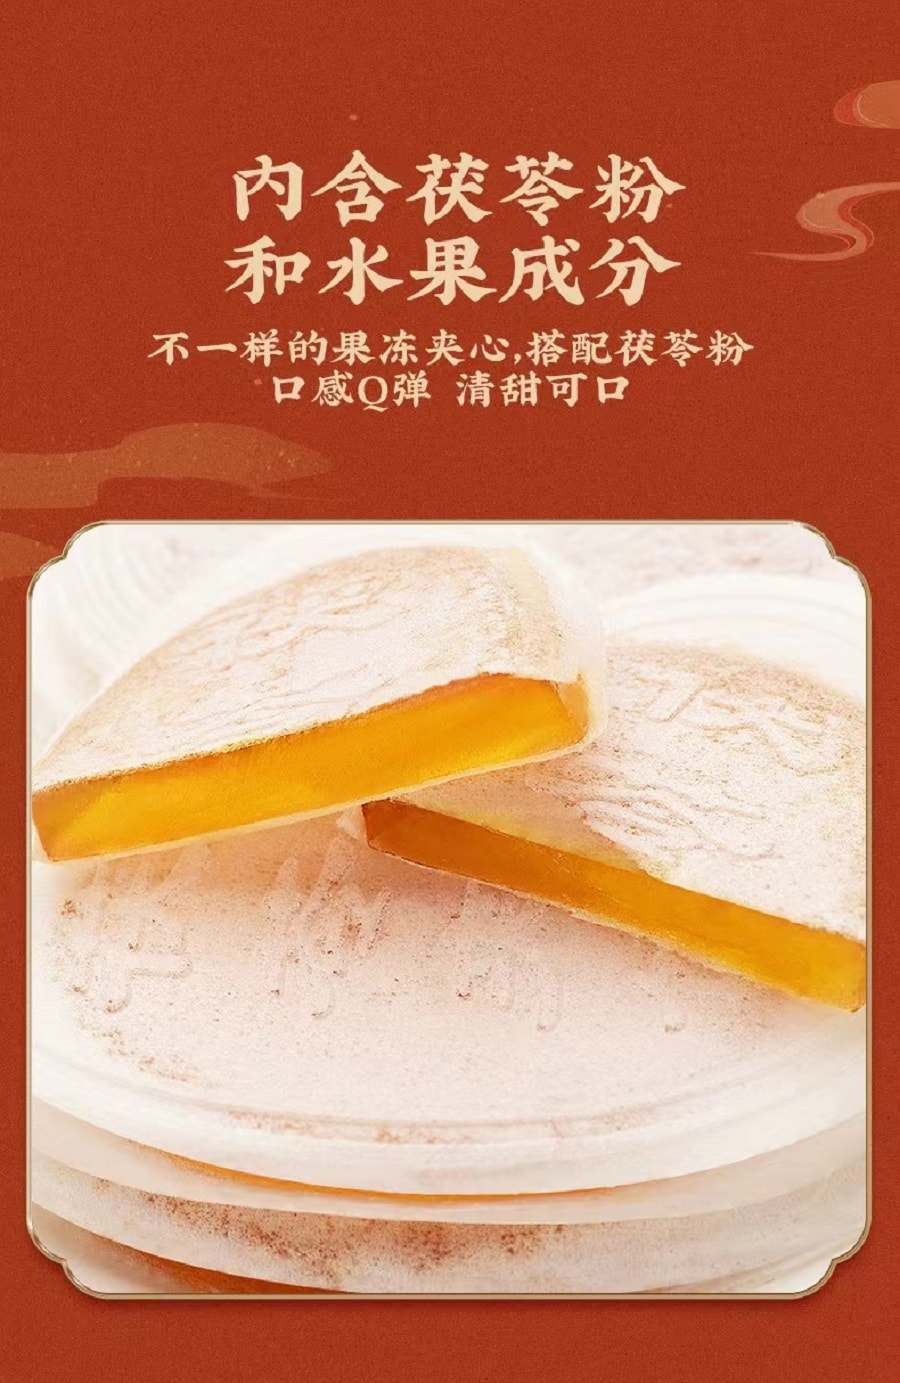 御食园老北京风味茯苓夹饼六种口味混合装120克 (促销)